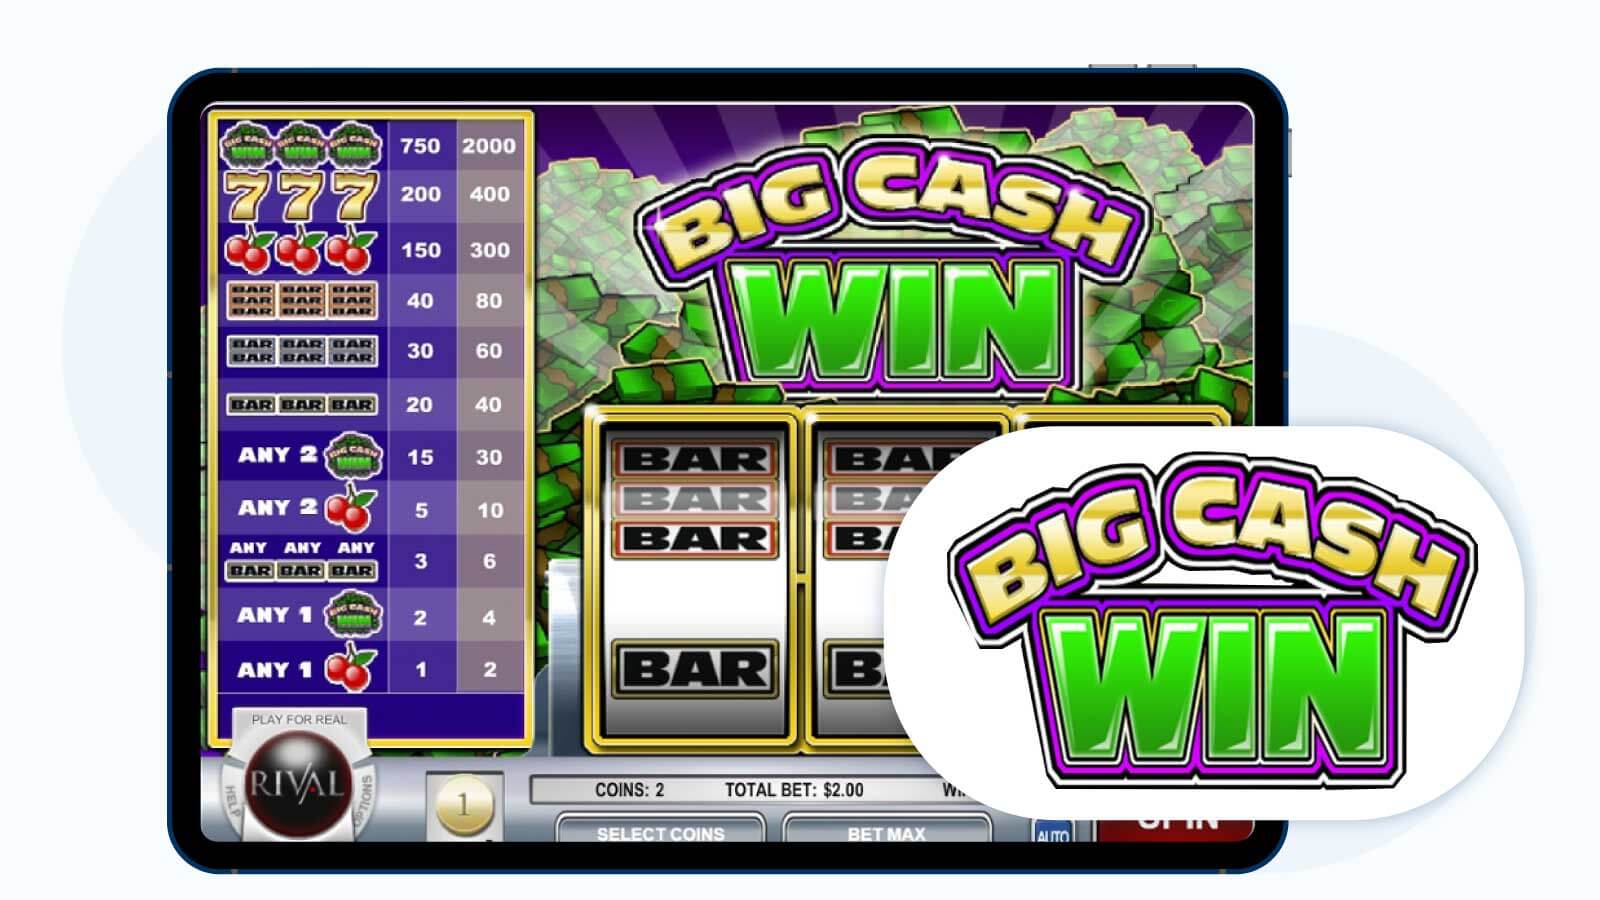 Best Rival Gaming Slot – Big Cash Win